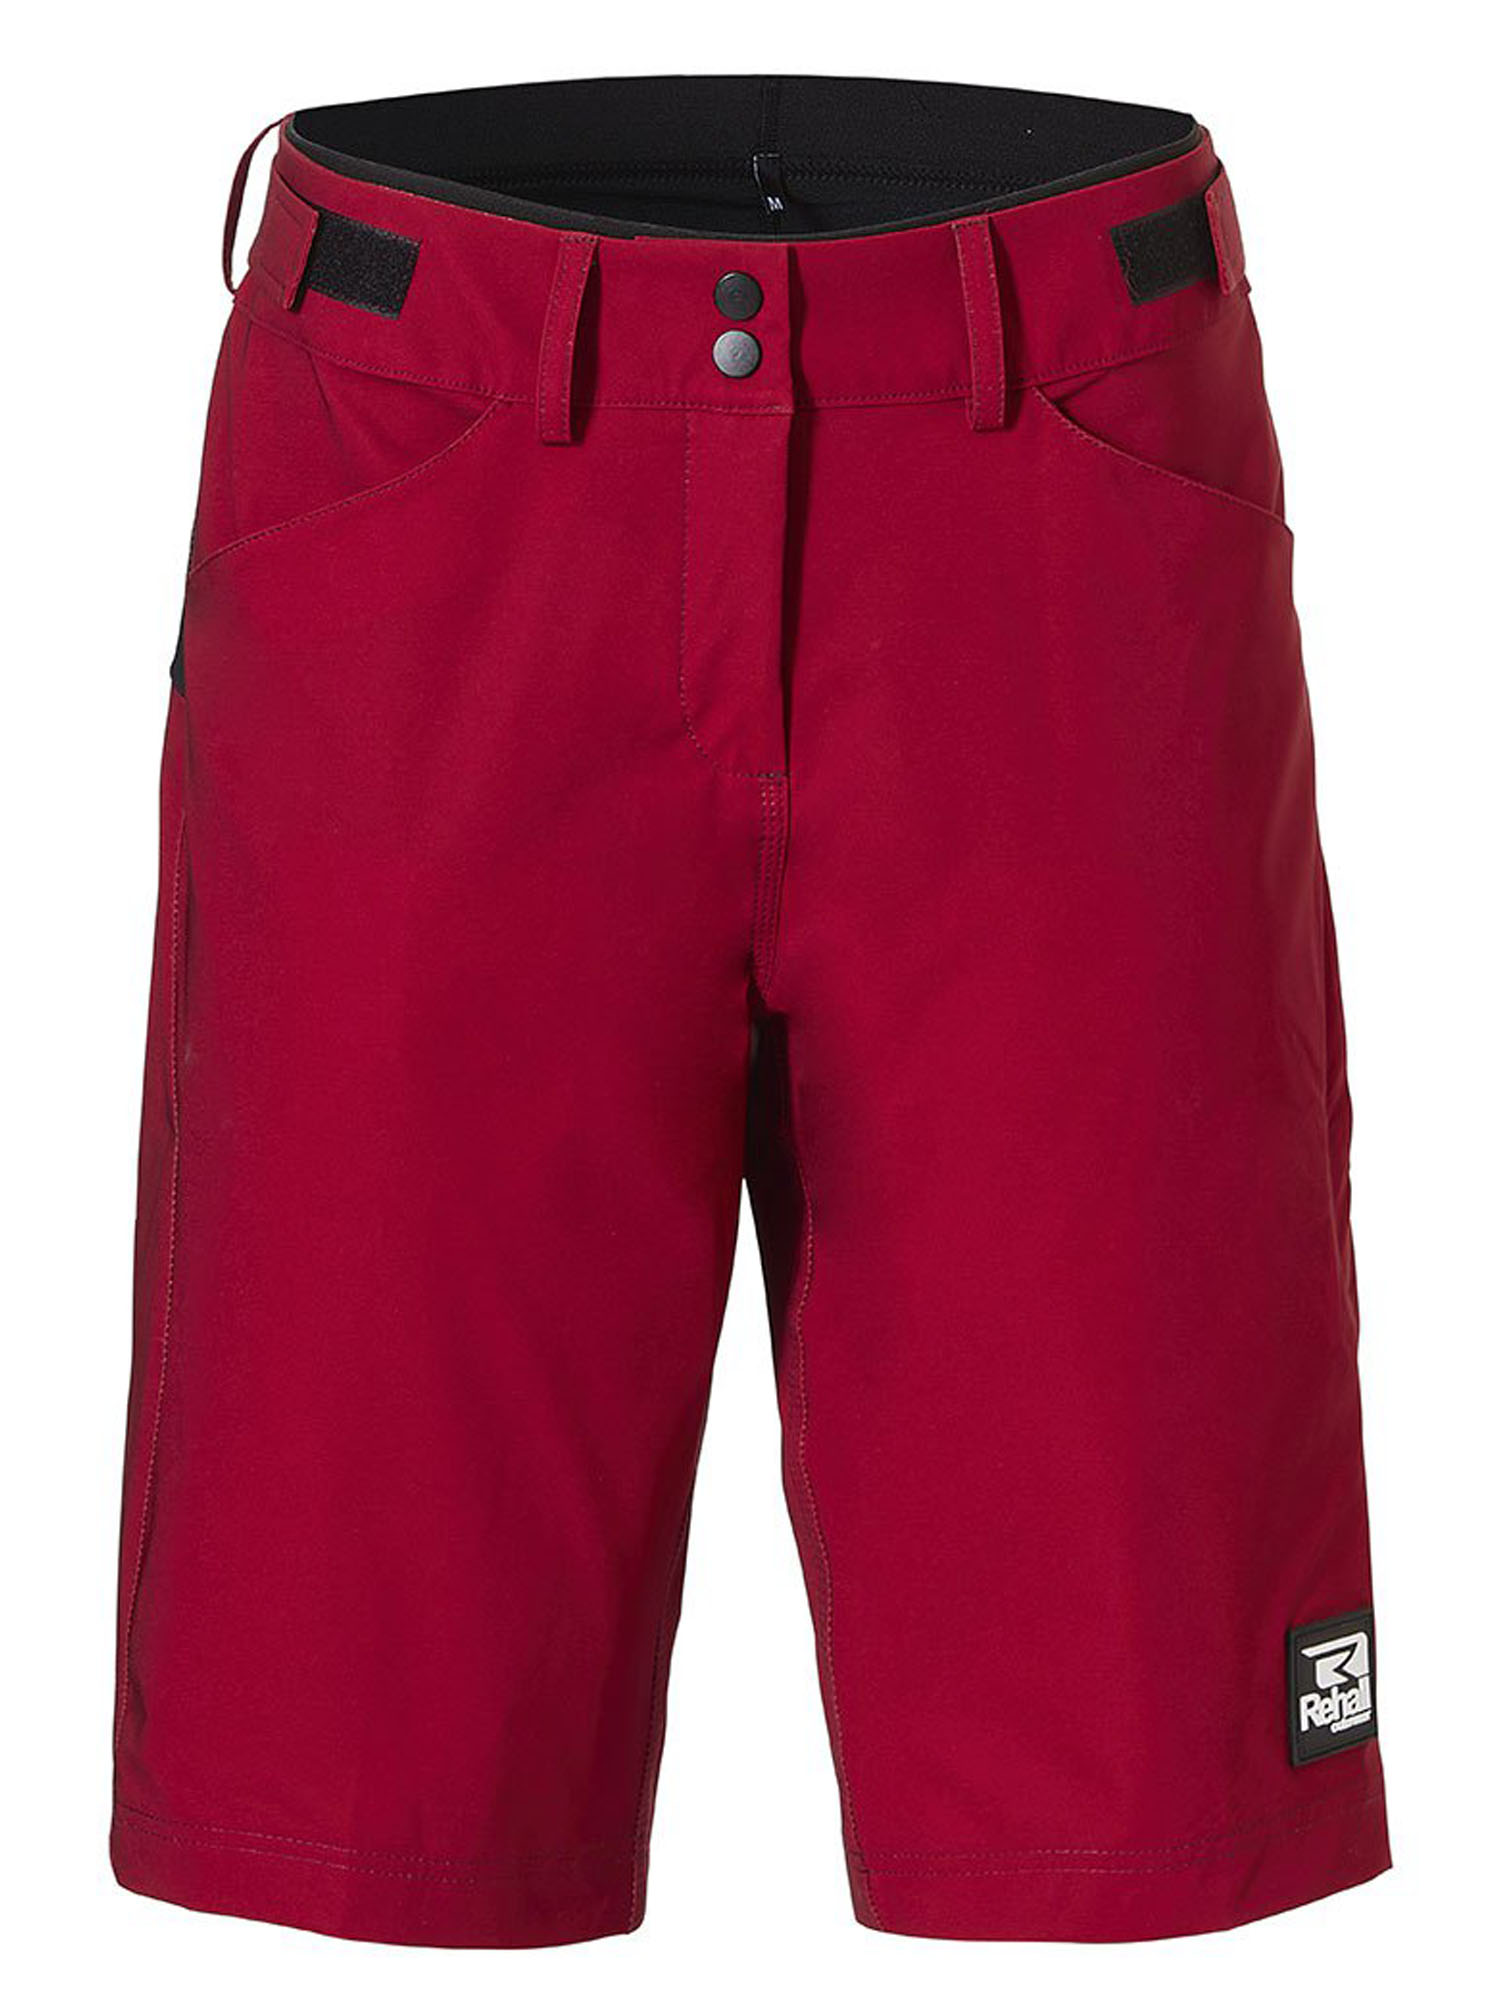 Повседневные шорты мужские REHALL Brake-R Bike Short бордовые M